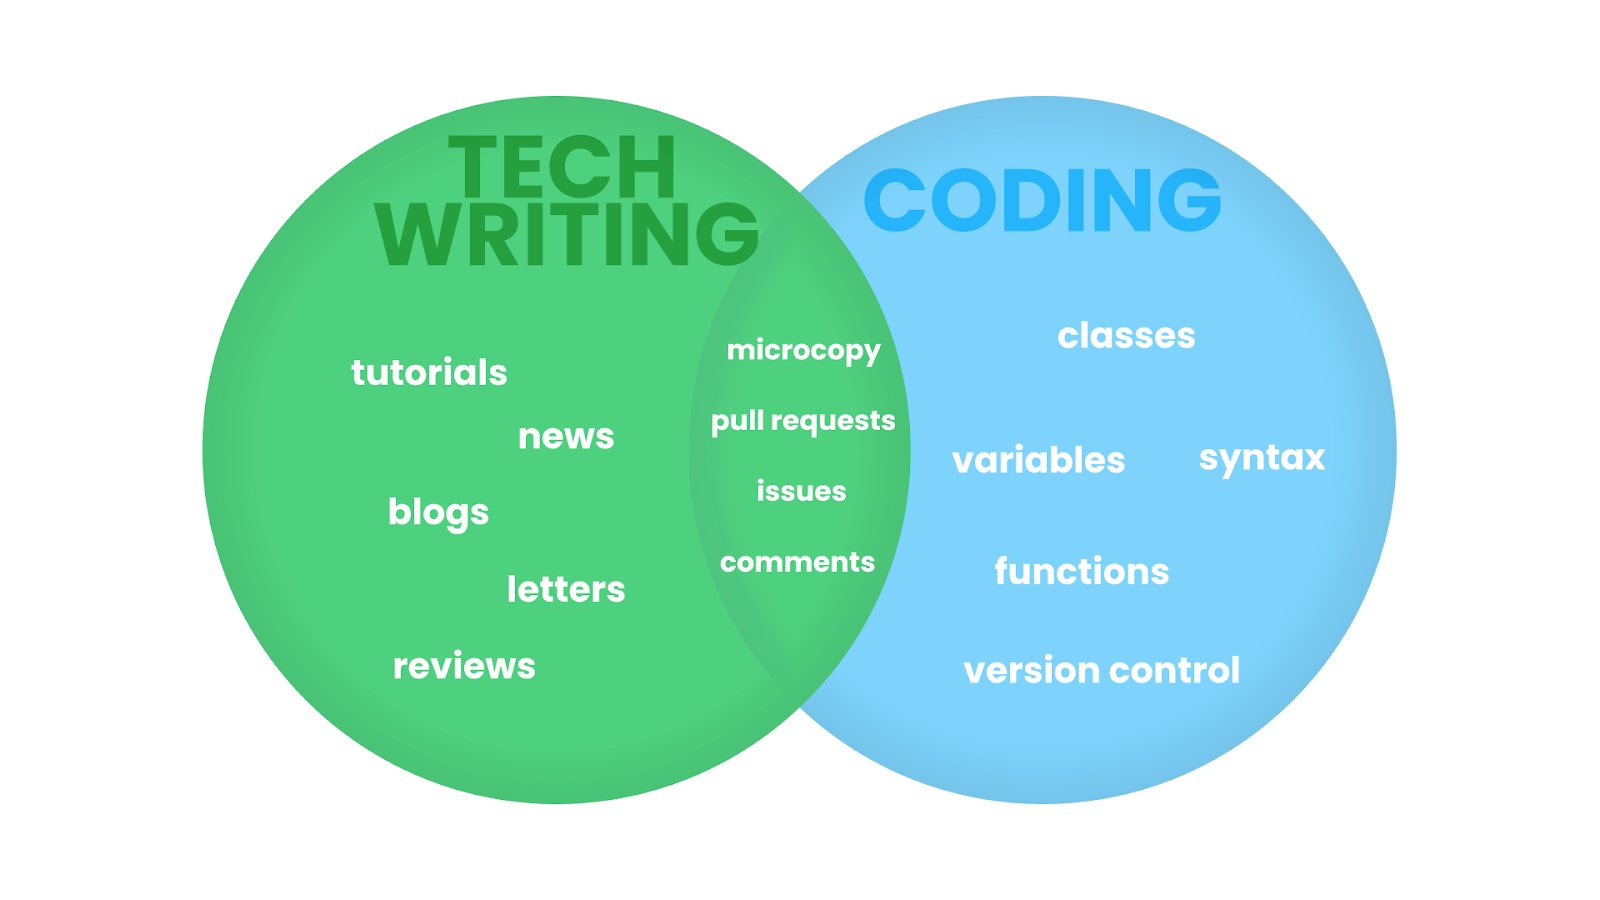 Teknik yazı ve kodlama arasındaki örtüşmeyi gösteren Venn şeması.